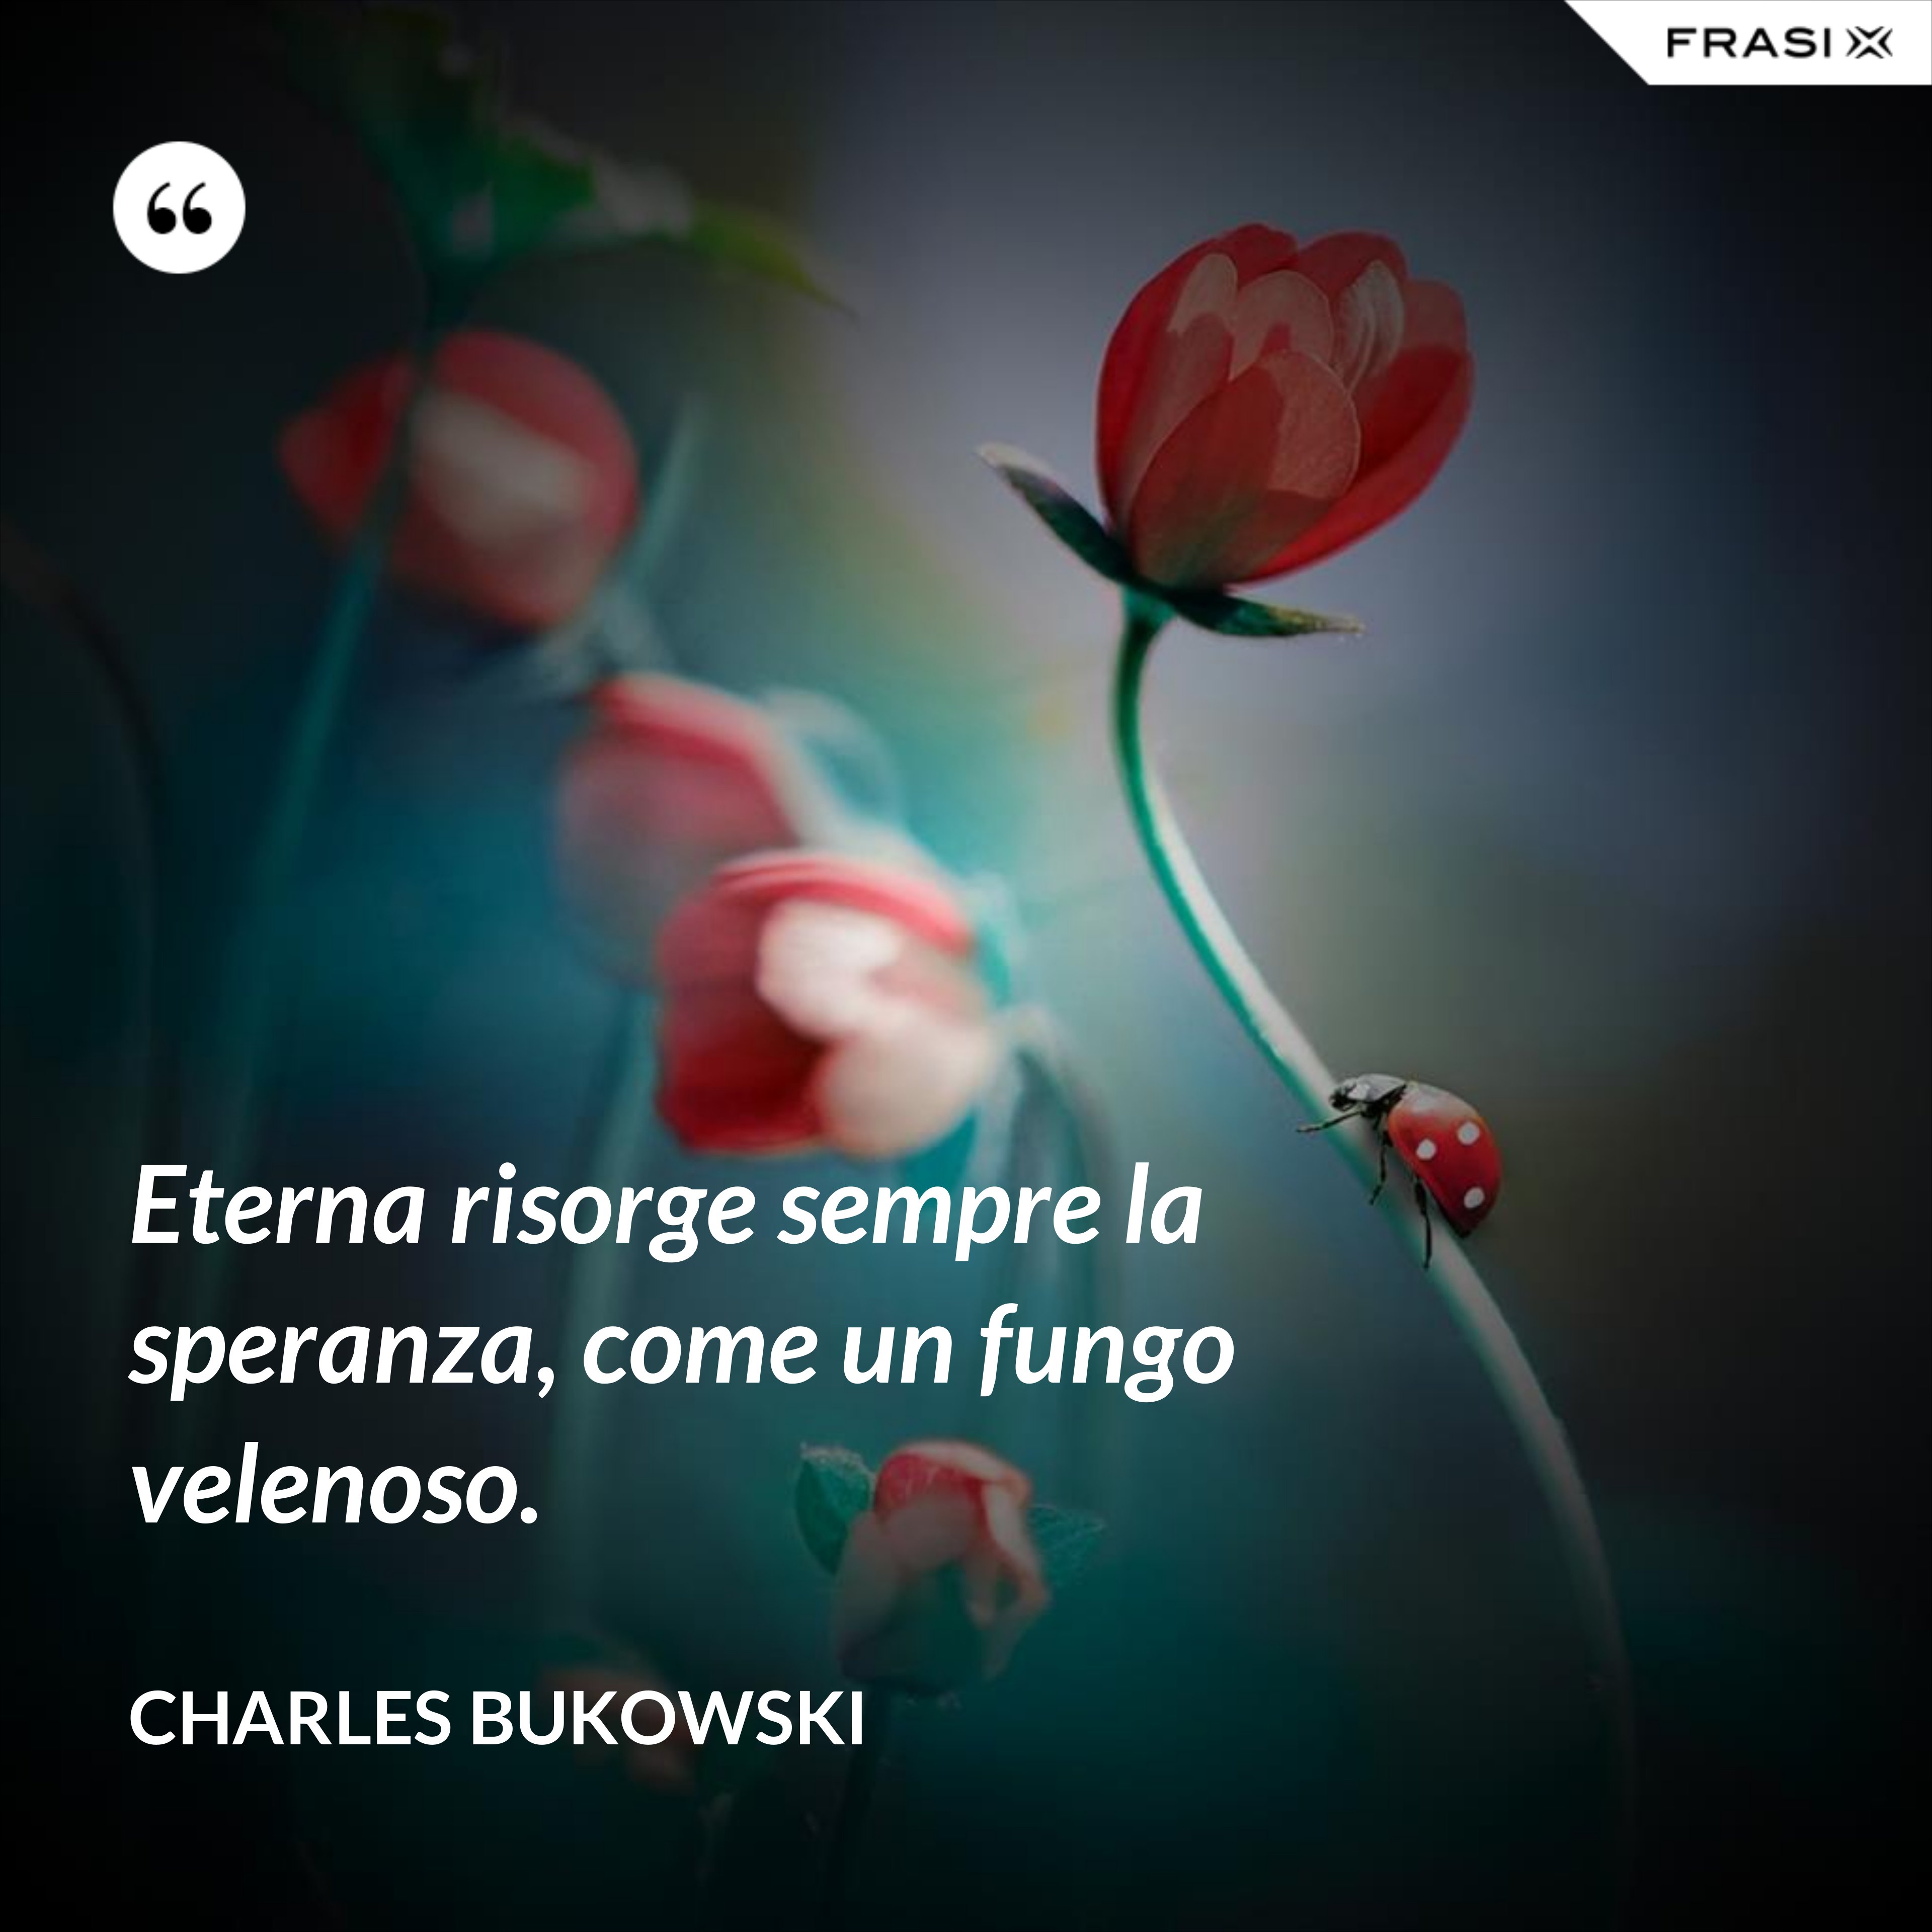 Eterna risorge sempre la speranza, come un fungo velenoso. - Charles Bukowski